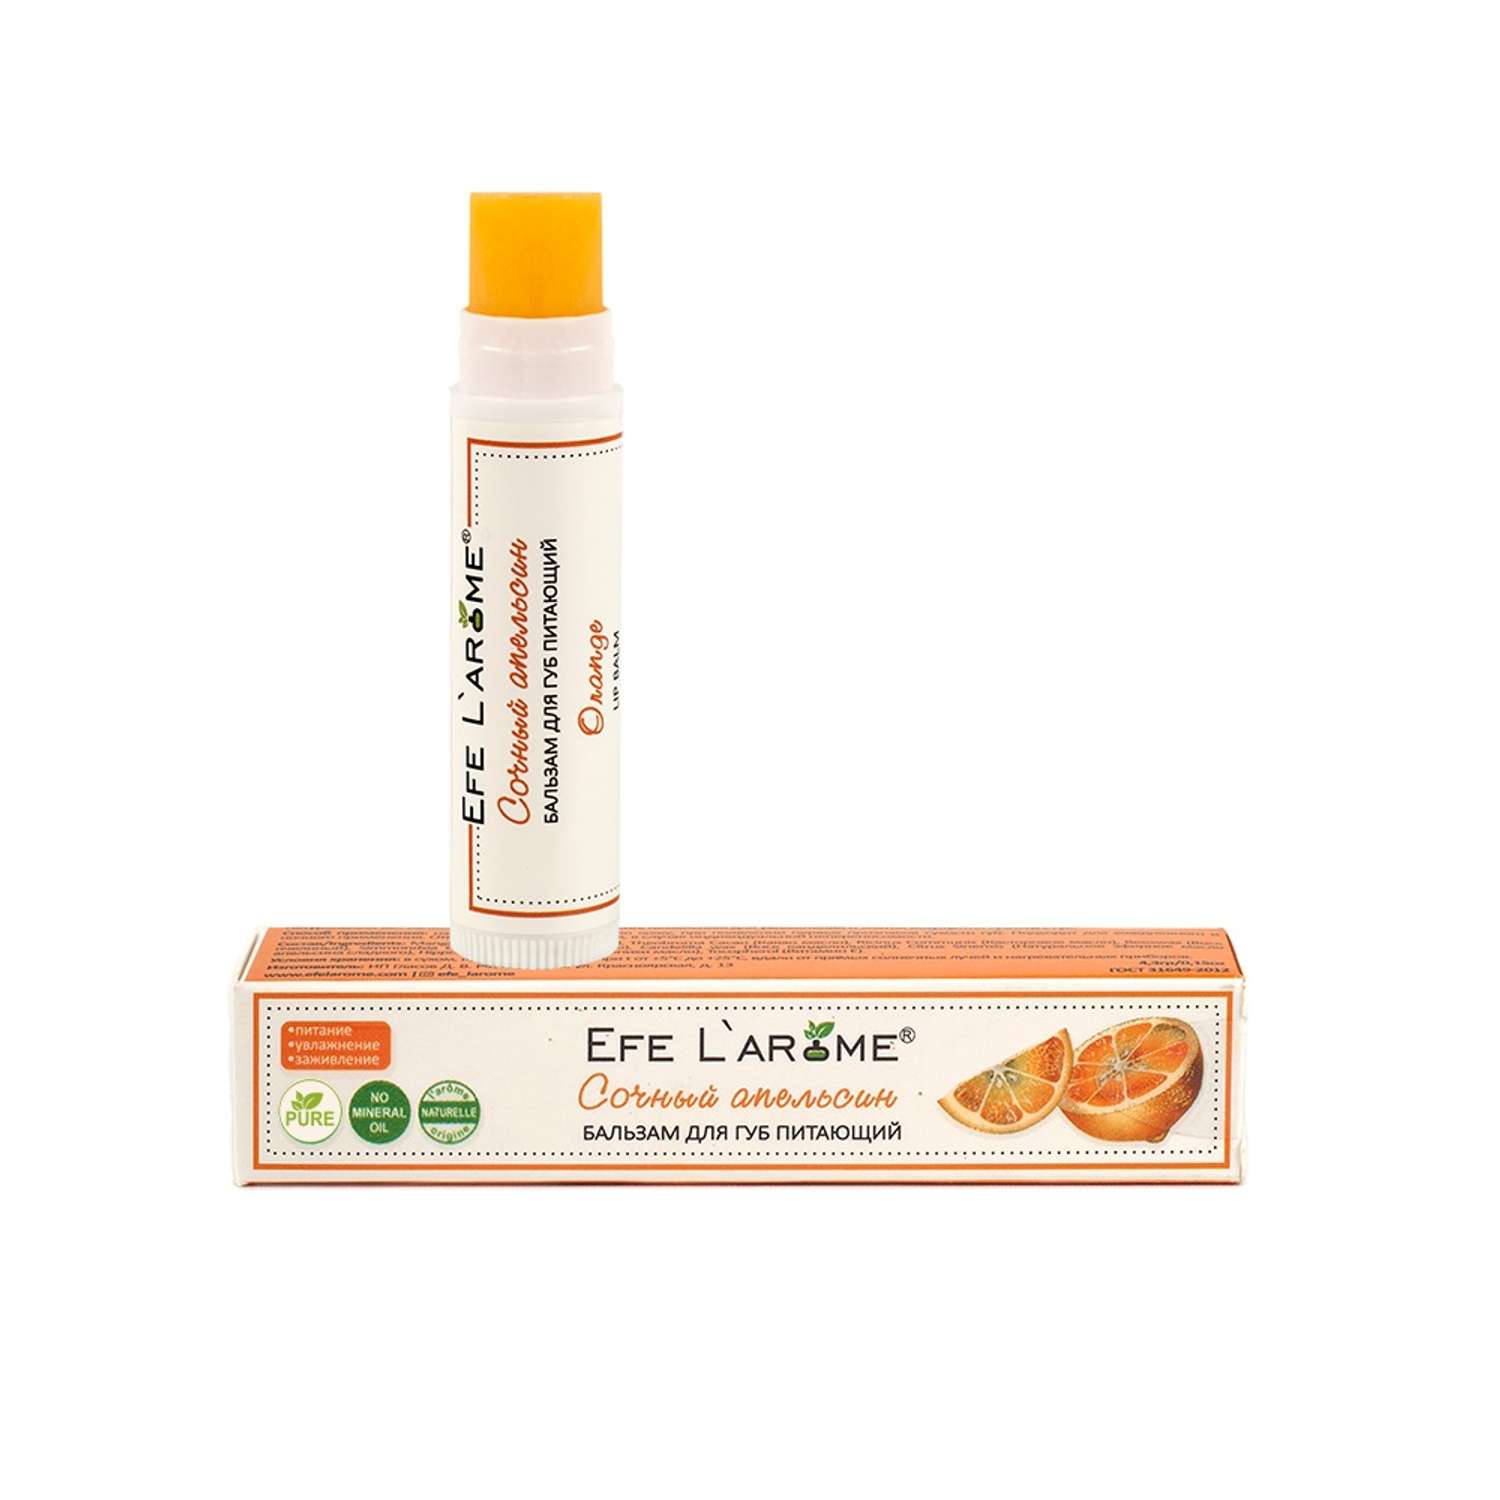 Бальзам для губ Efe L’arome Сочный апельсин питание с эфирным маслом апельсина сладкого - фото 10